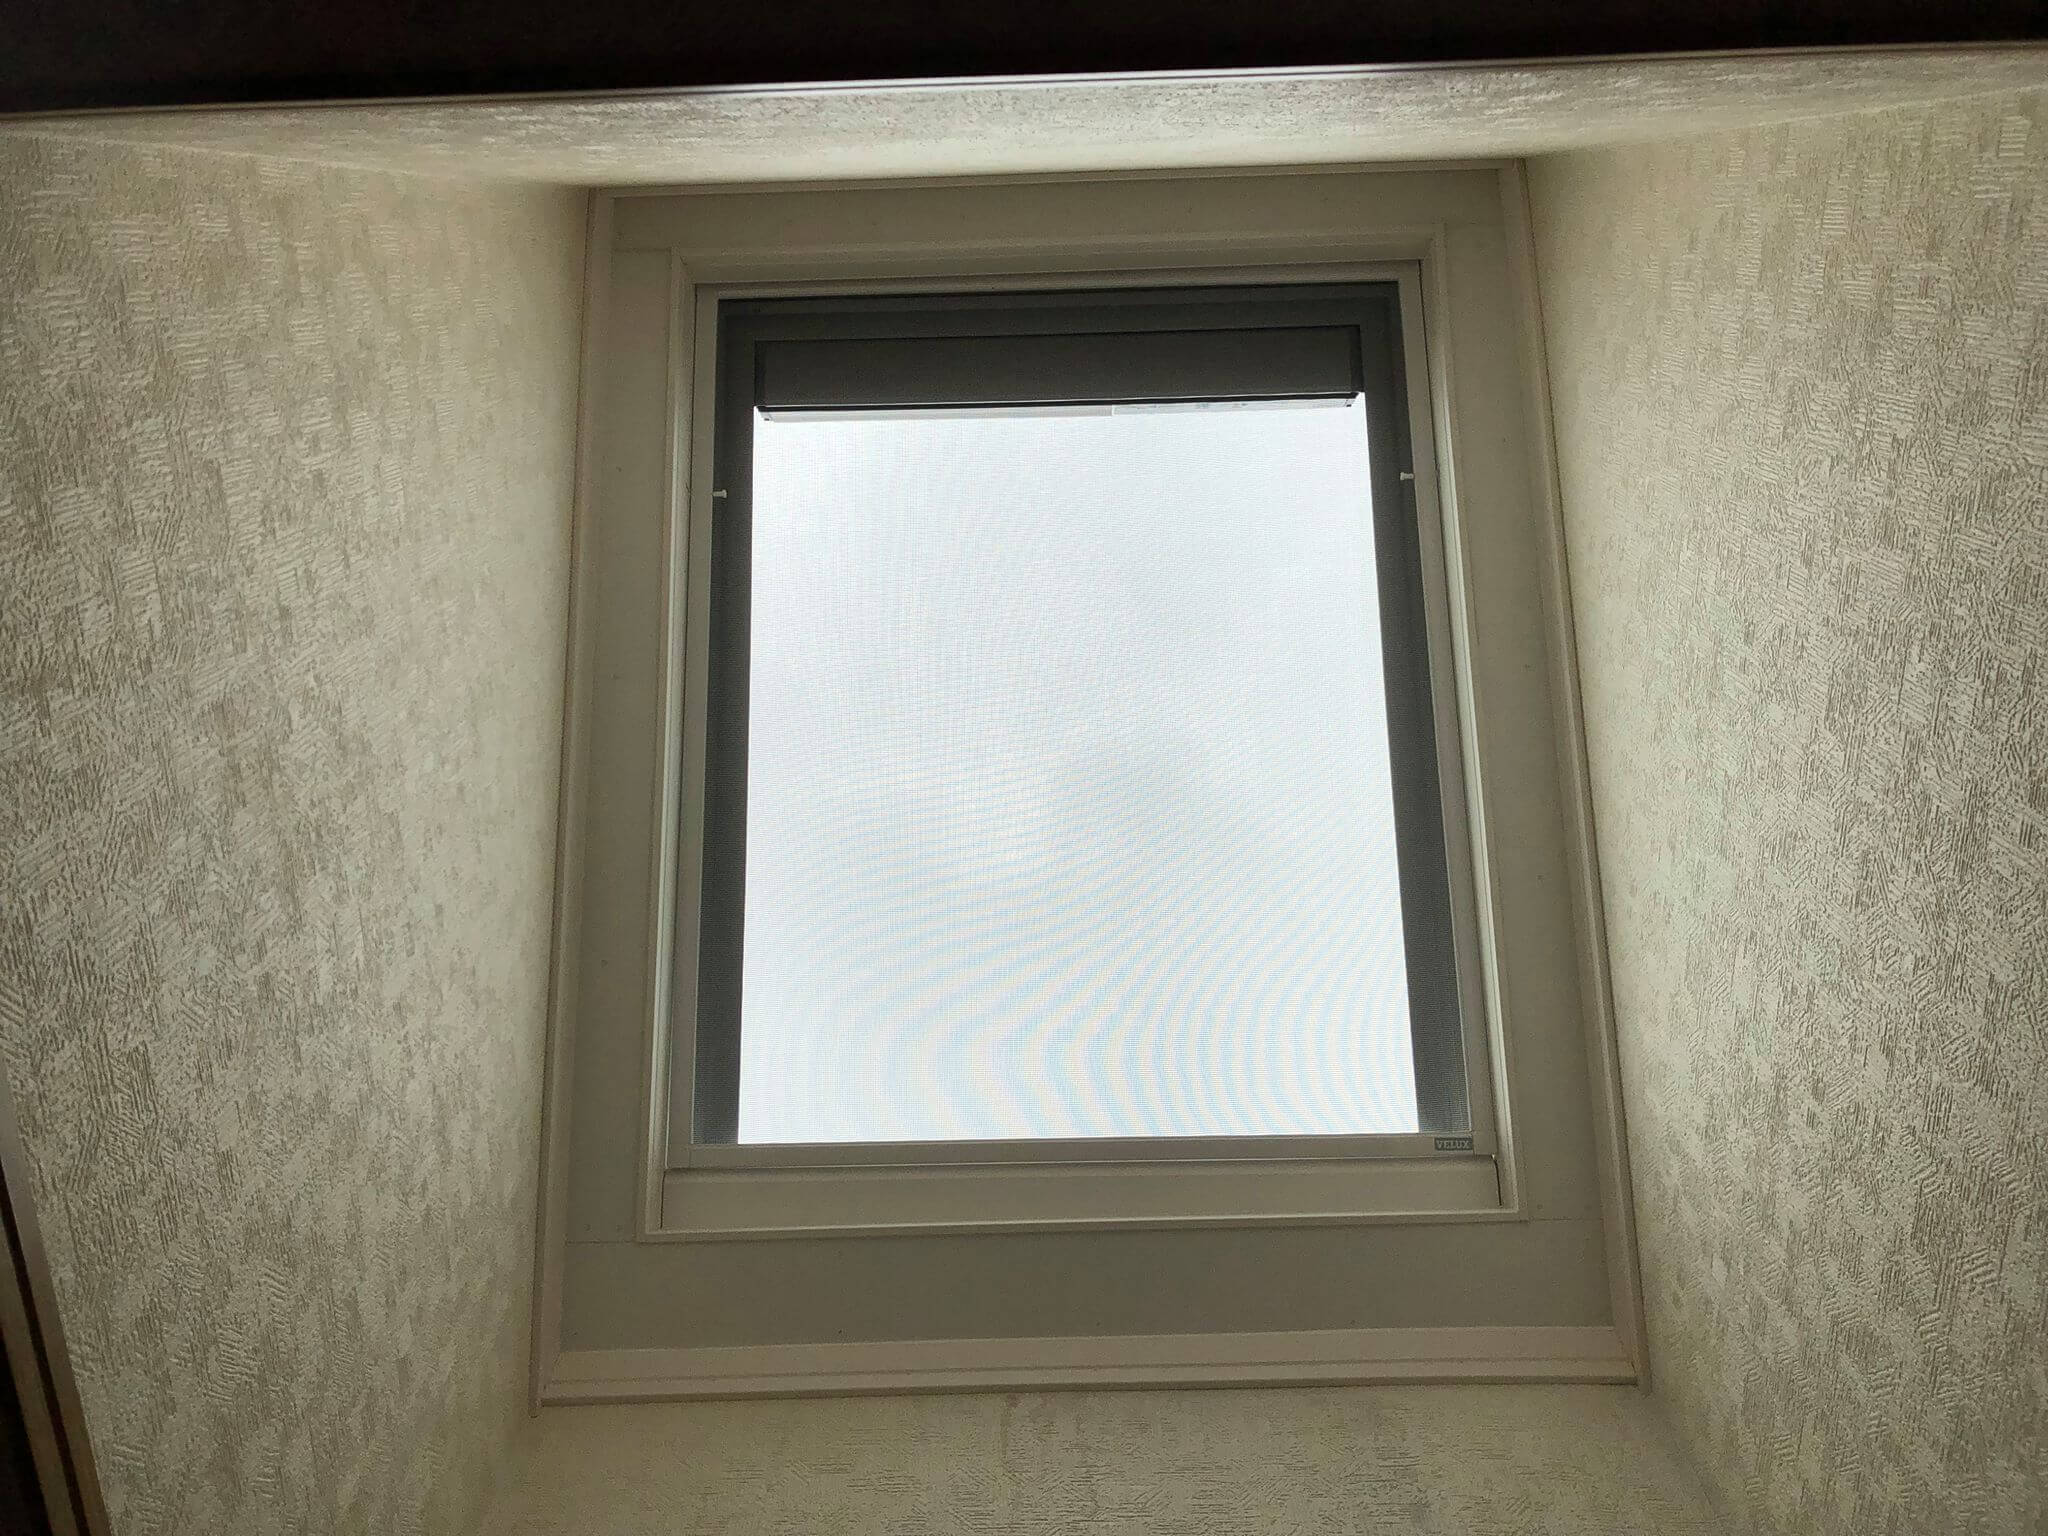 ベルックスのソーラー開閉式天窓を実際に取り付けた施工写真